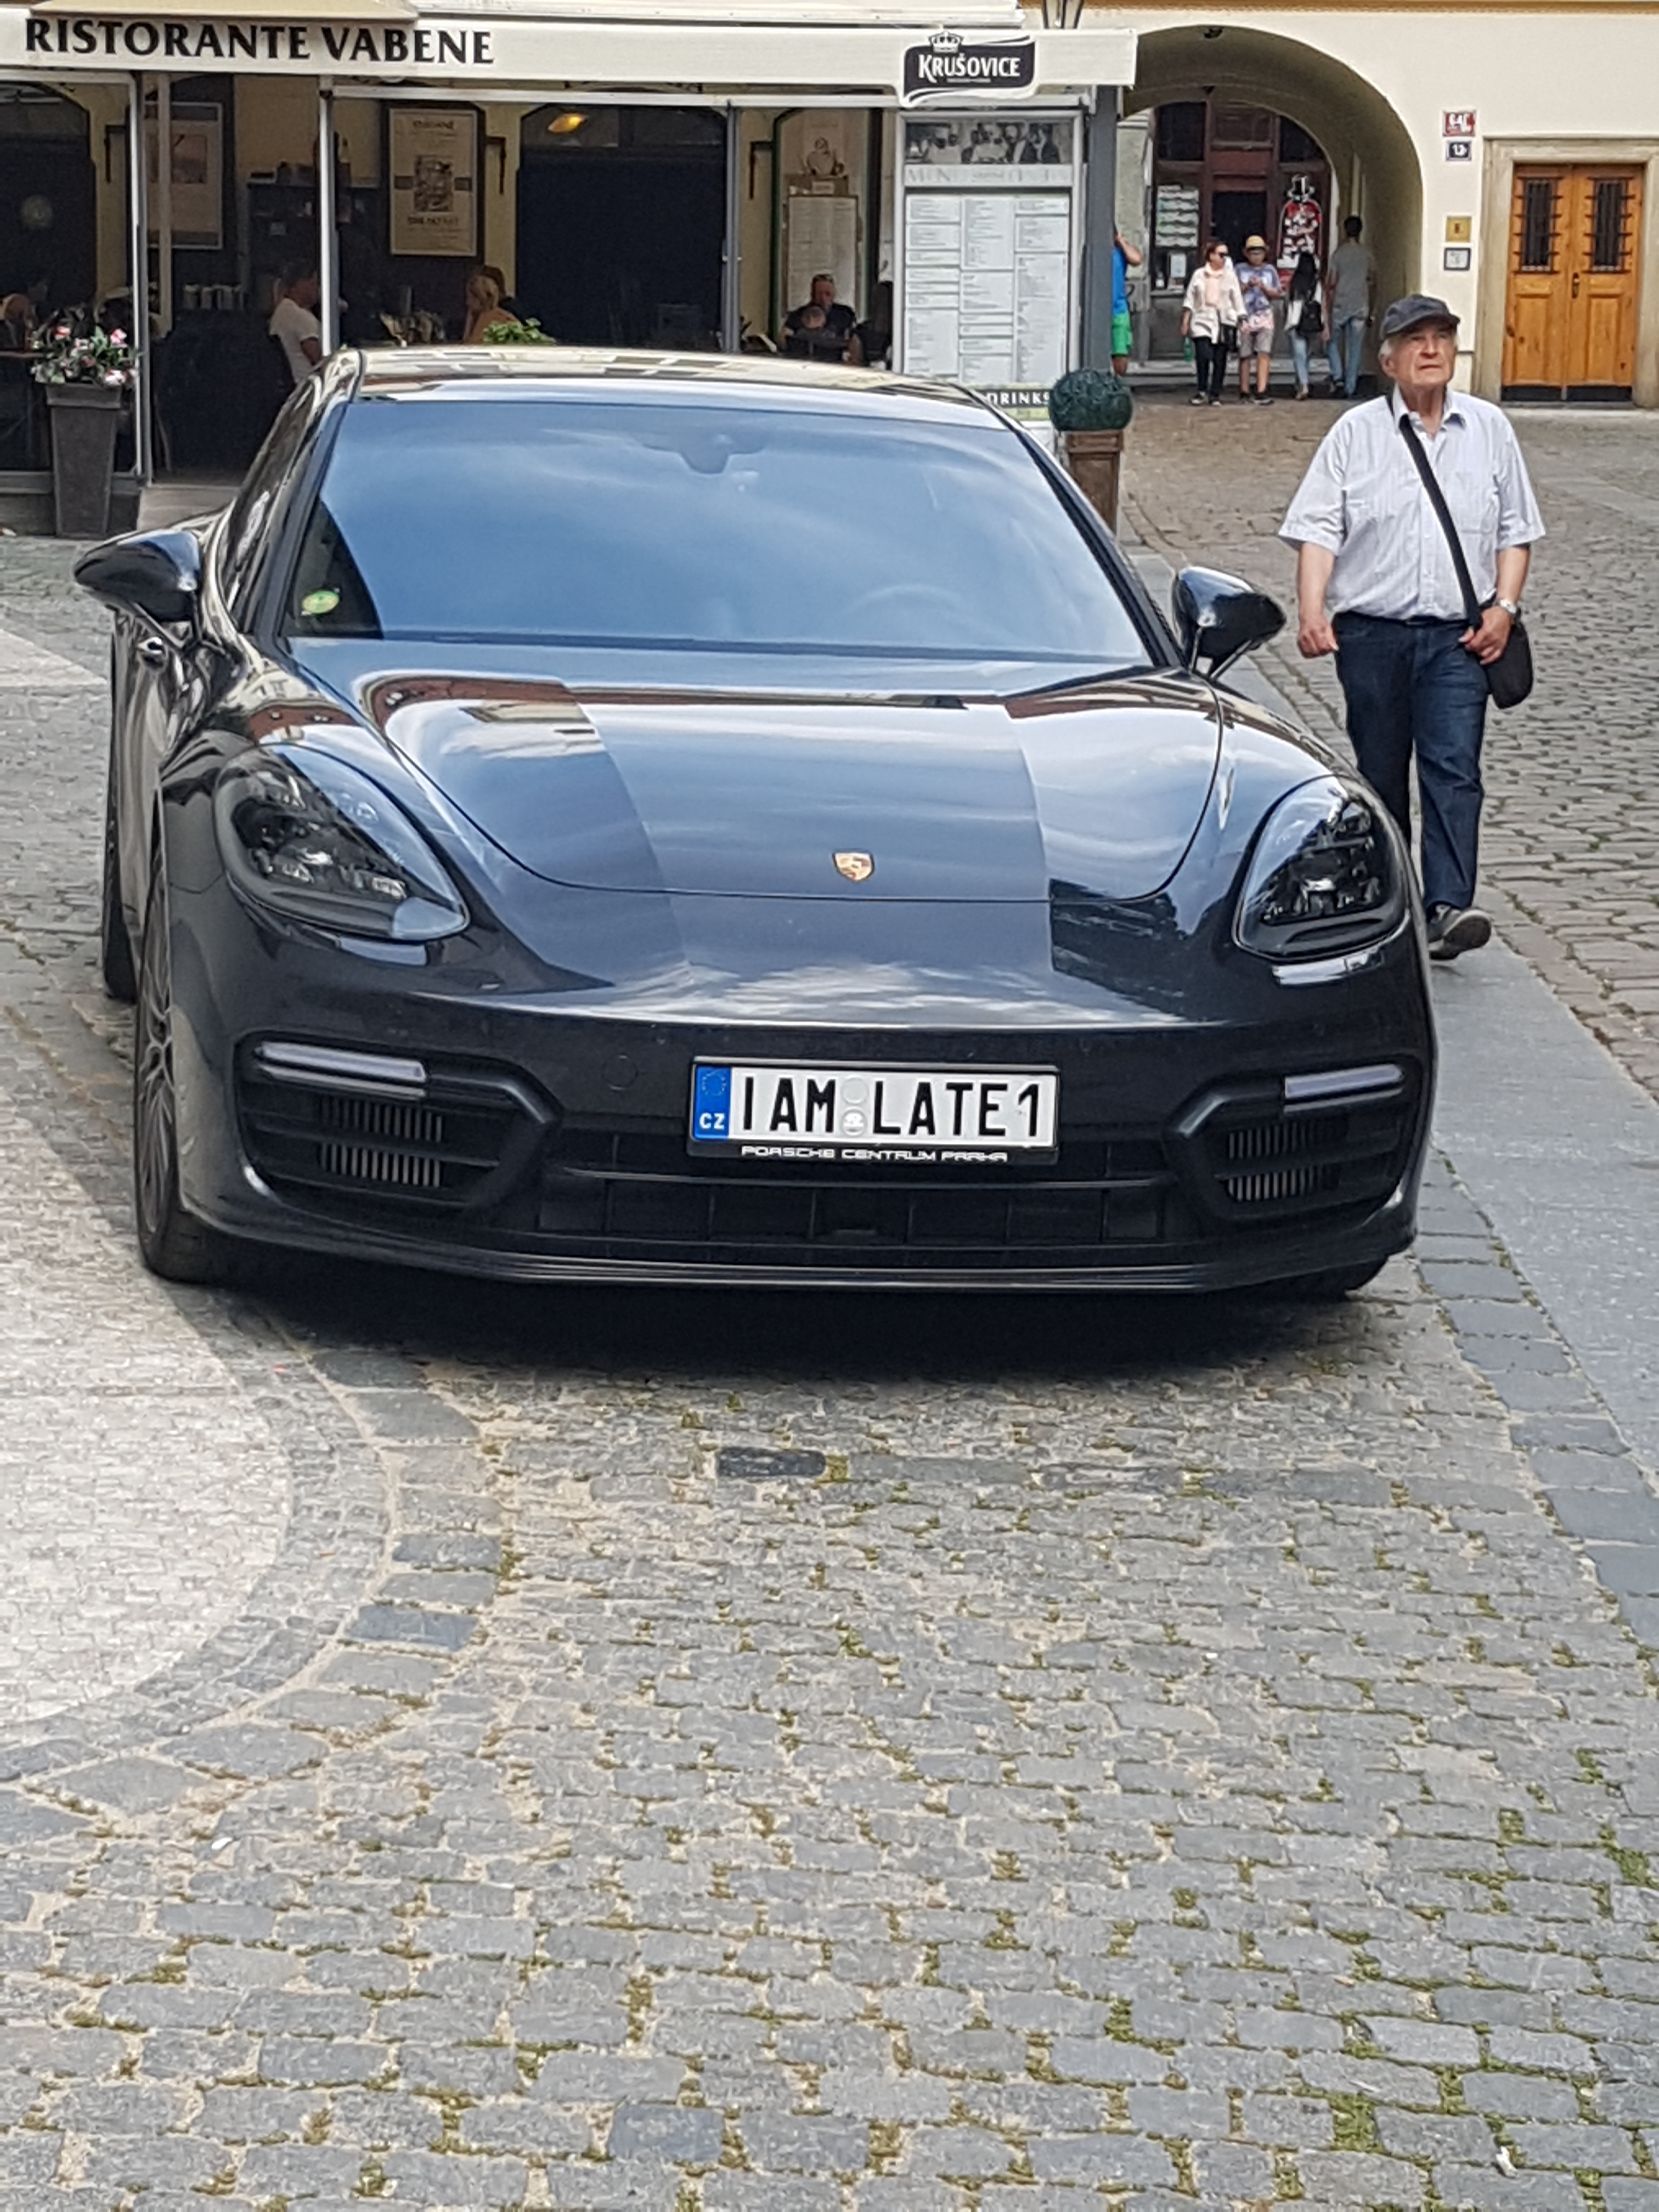 Tsjech heeft nieuwe Porsche